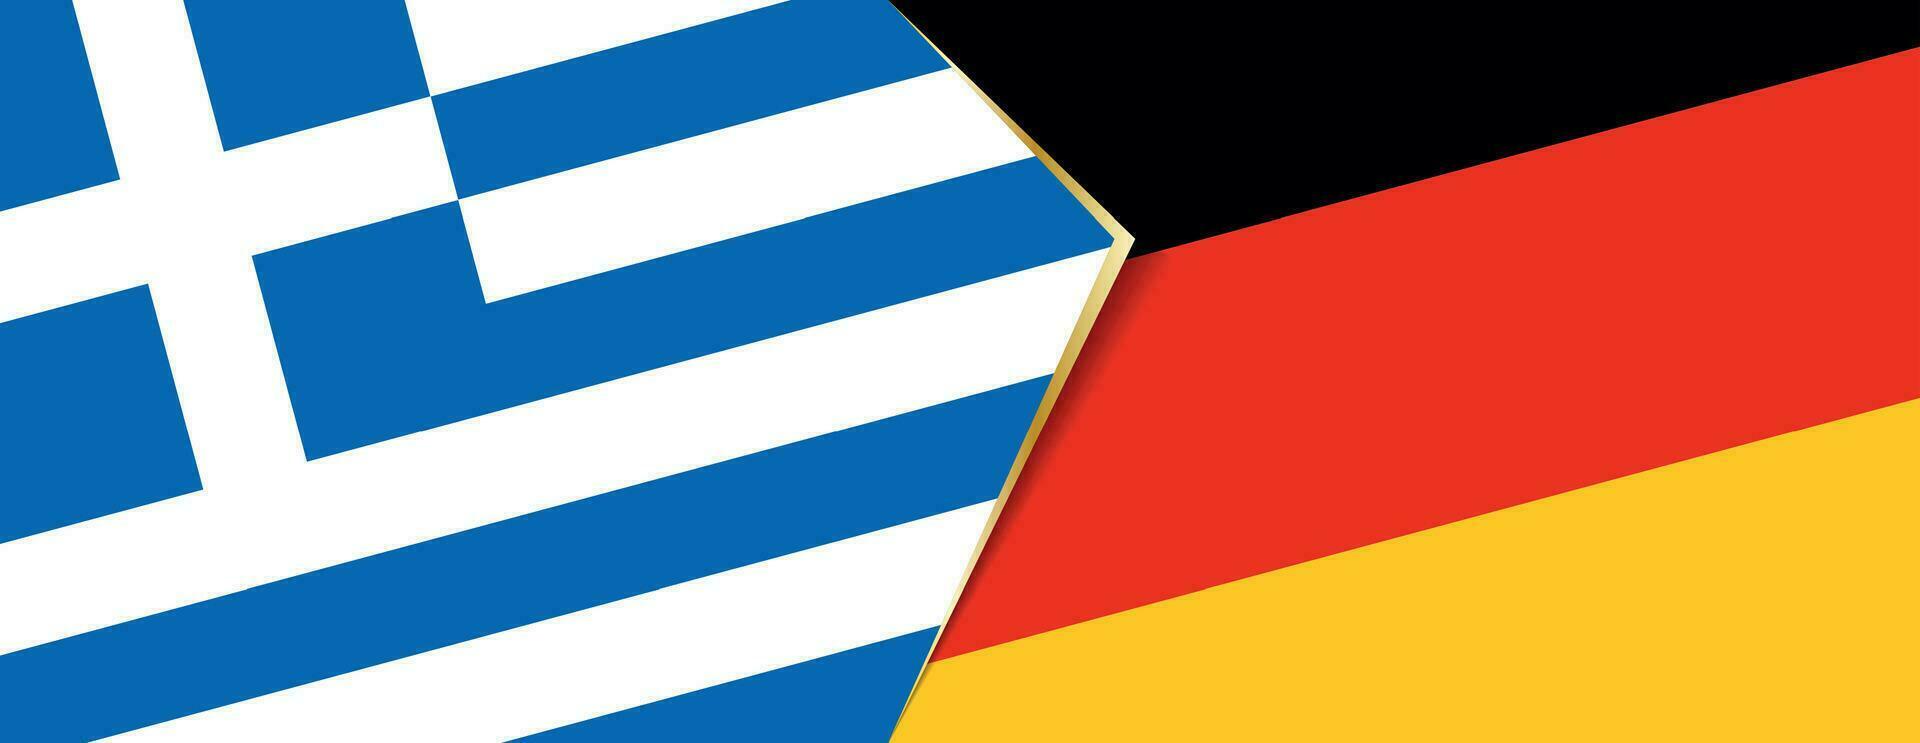 grekland och Tyskland flaggor, två vektor flaggor.